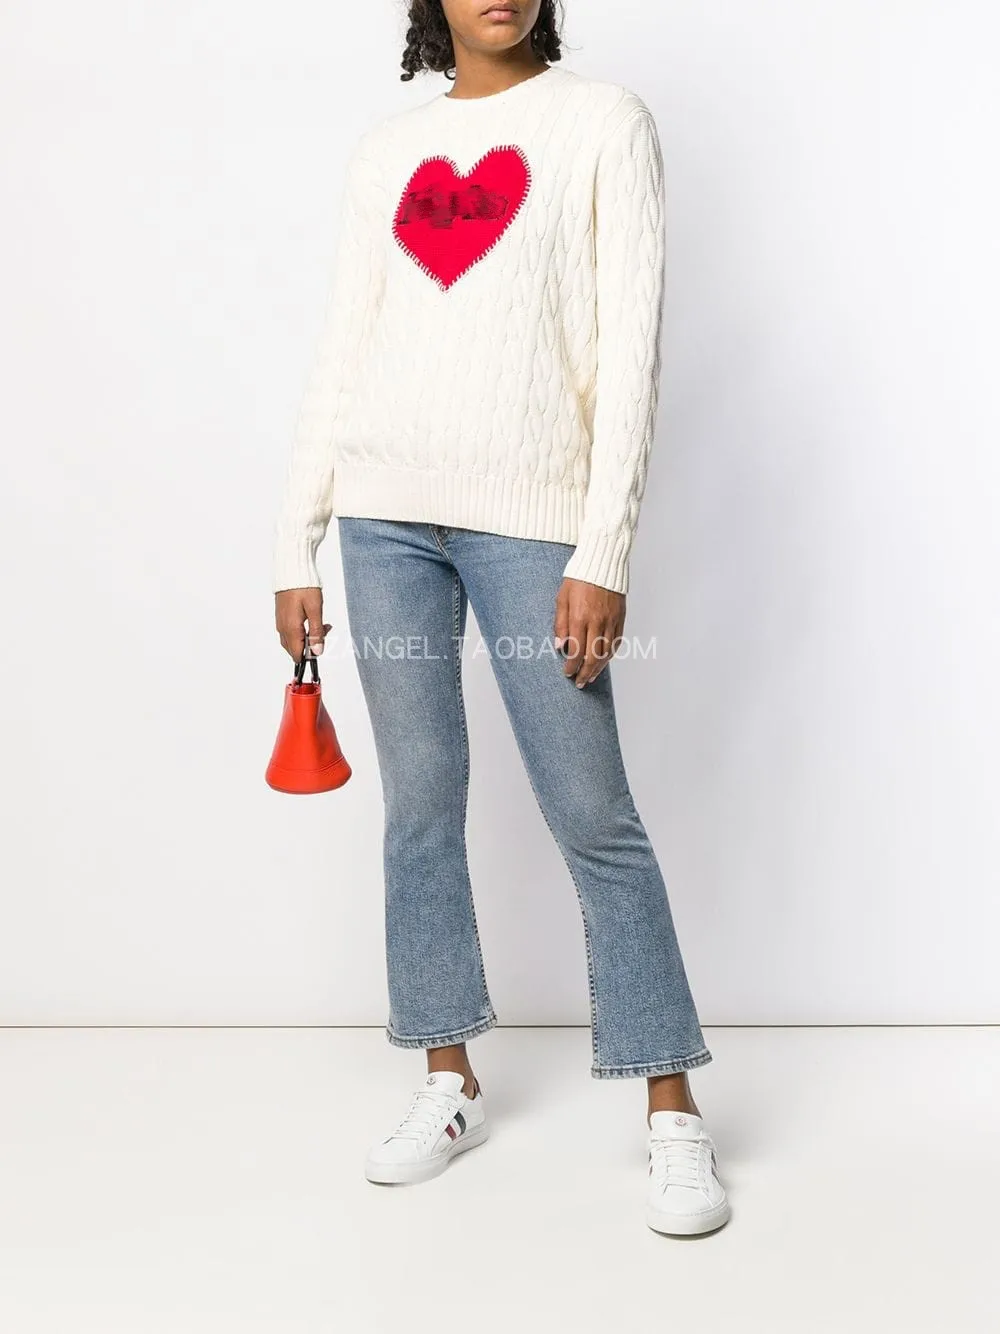 CAMIA, вязаный свитер с вышивкой в виде сердца, известный американский бренд, Женский вязаный пуловер, осенне-зимний трикотажный топ